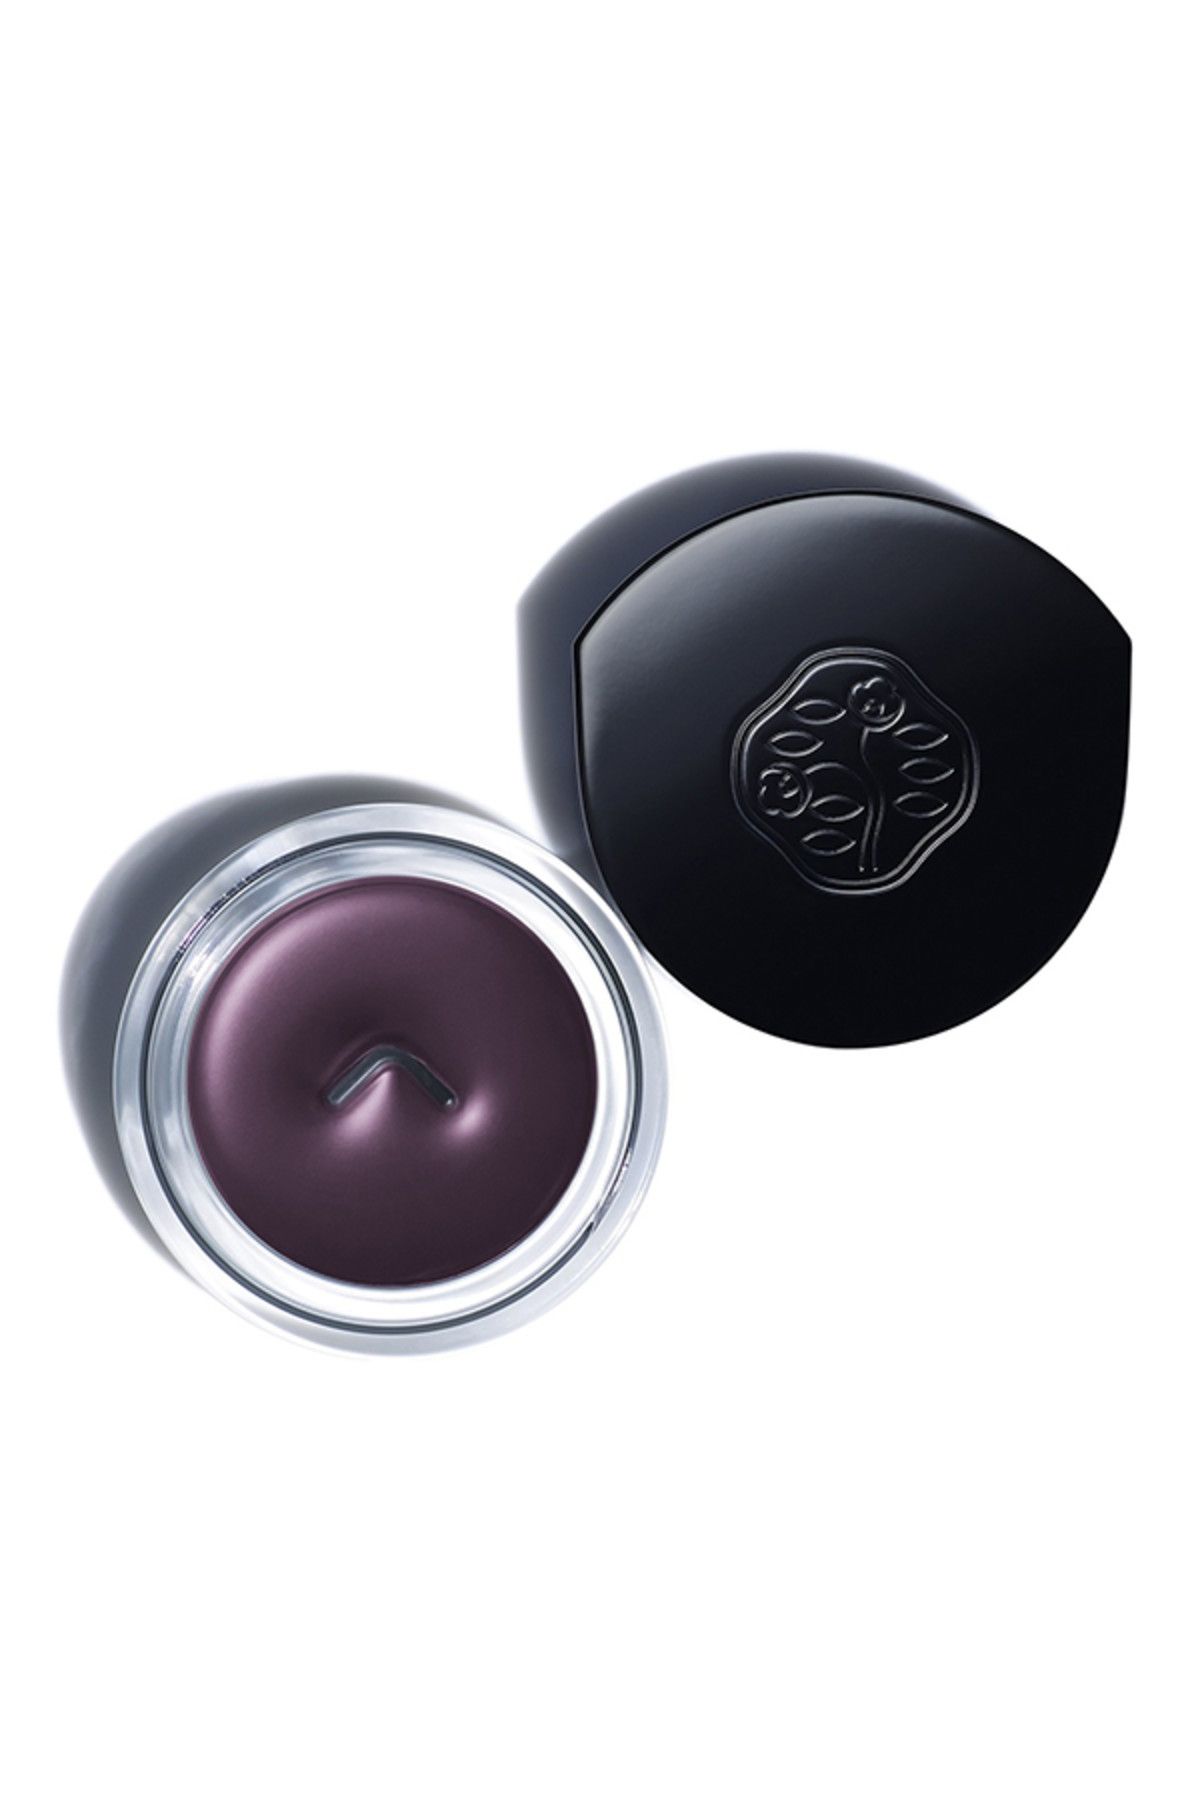 Shiseido Jel Eyeniler - Inkstroke Eyeliner VI605 Nasubi Purple 729238138636